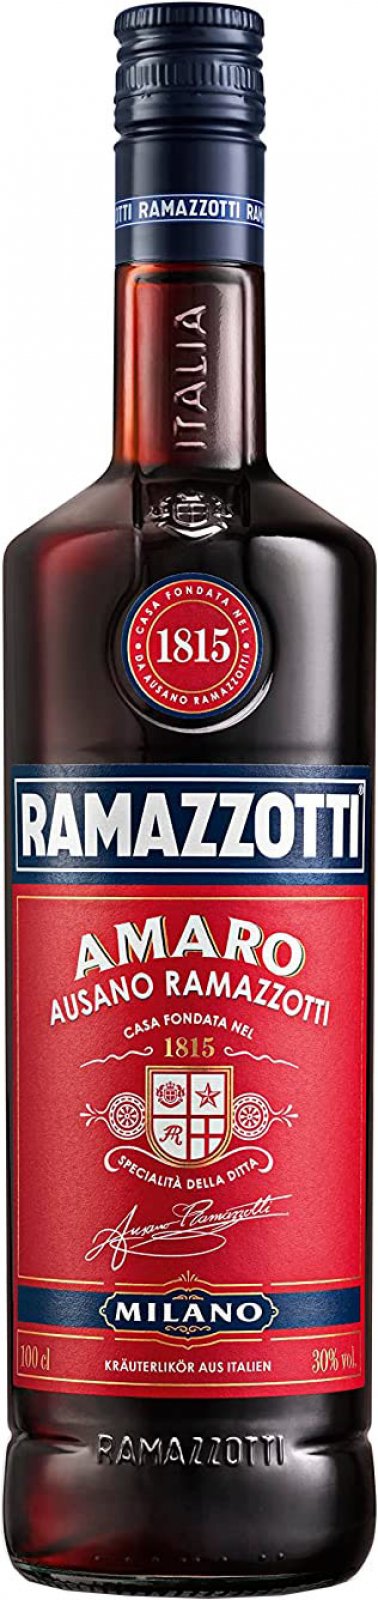 Ramazzotti Amaro 1 Liter 30% Vol. im Shop